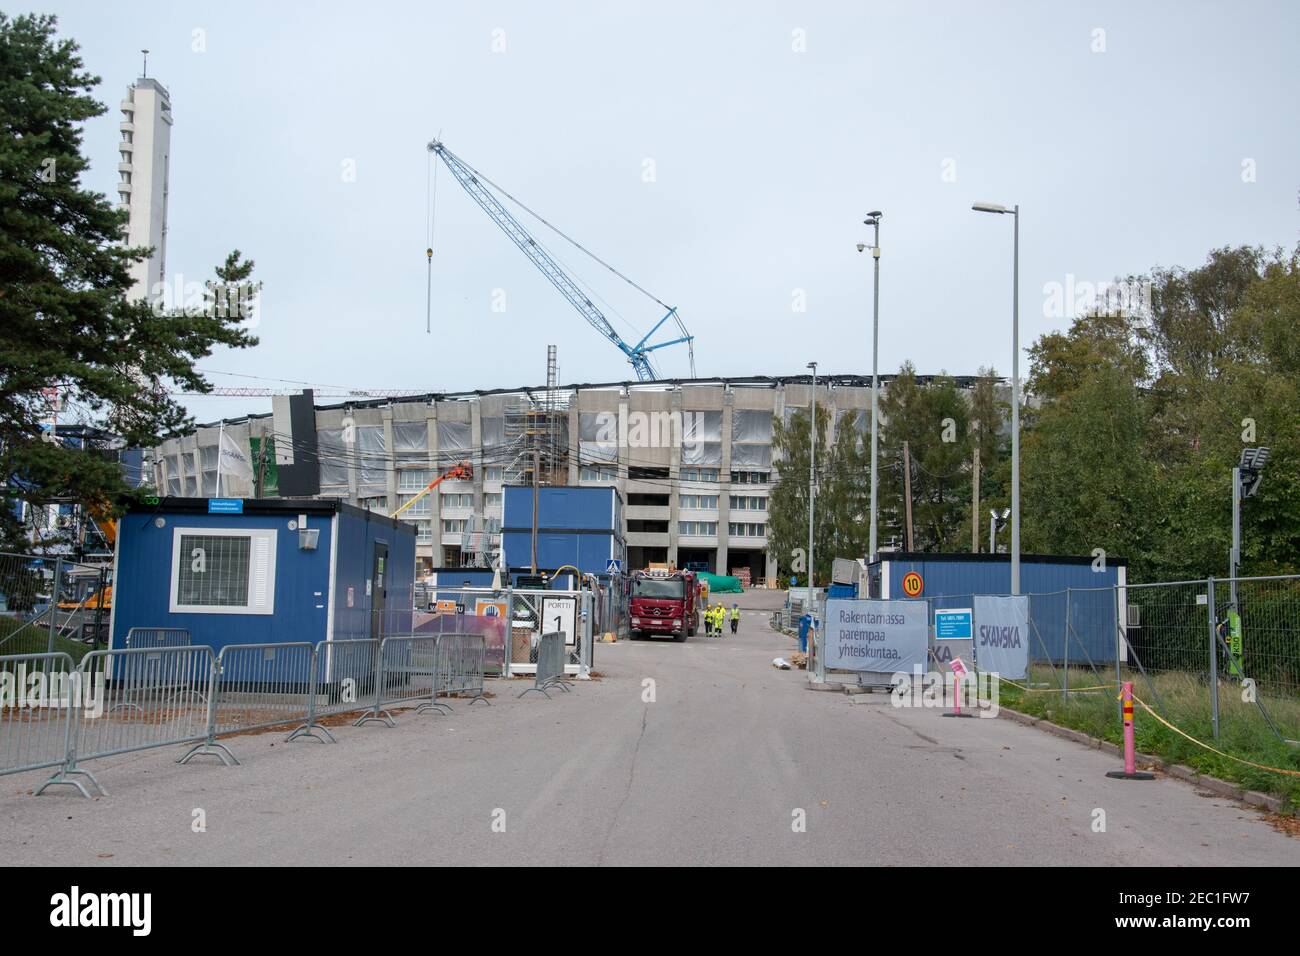 Le stade olympique d'Helsinki est en cours de rénovation. Le stade a rouvert ses portes en août 2020 après 4 ans de rénovation. Il a ouvert ses portes en 1938. Banque D'Images